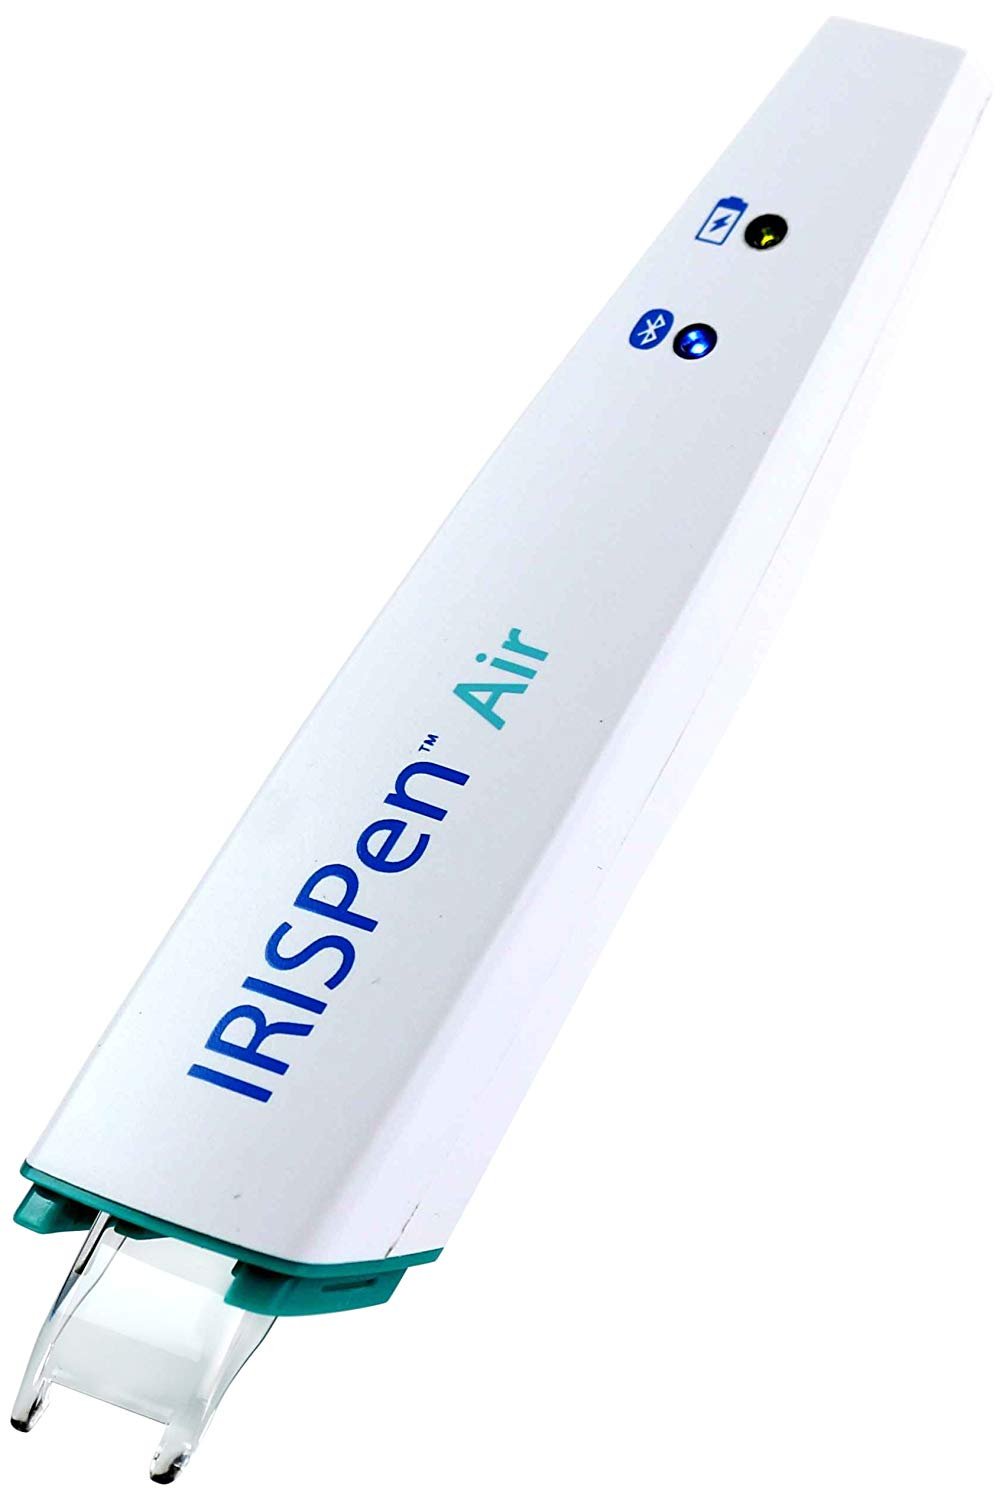 IRISPen Air 7 Wireless Digital Highlighter Pen Scanner 1